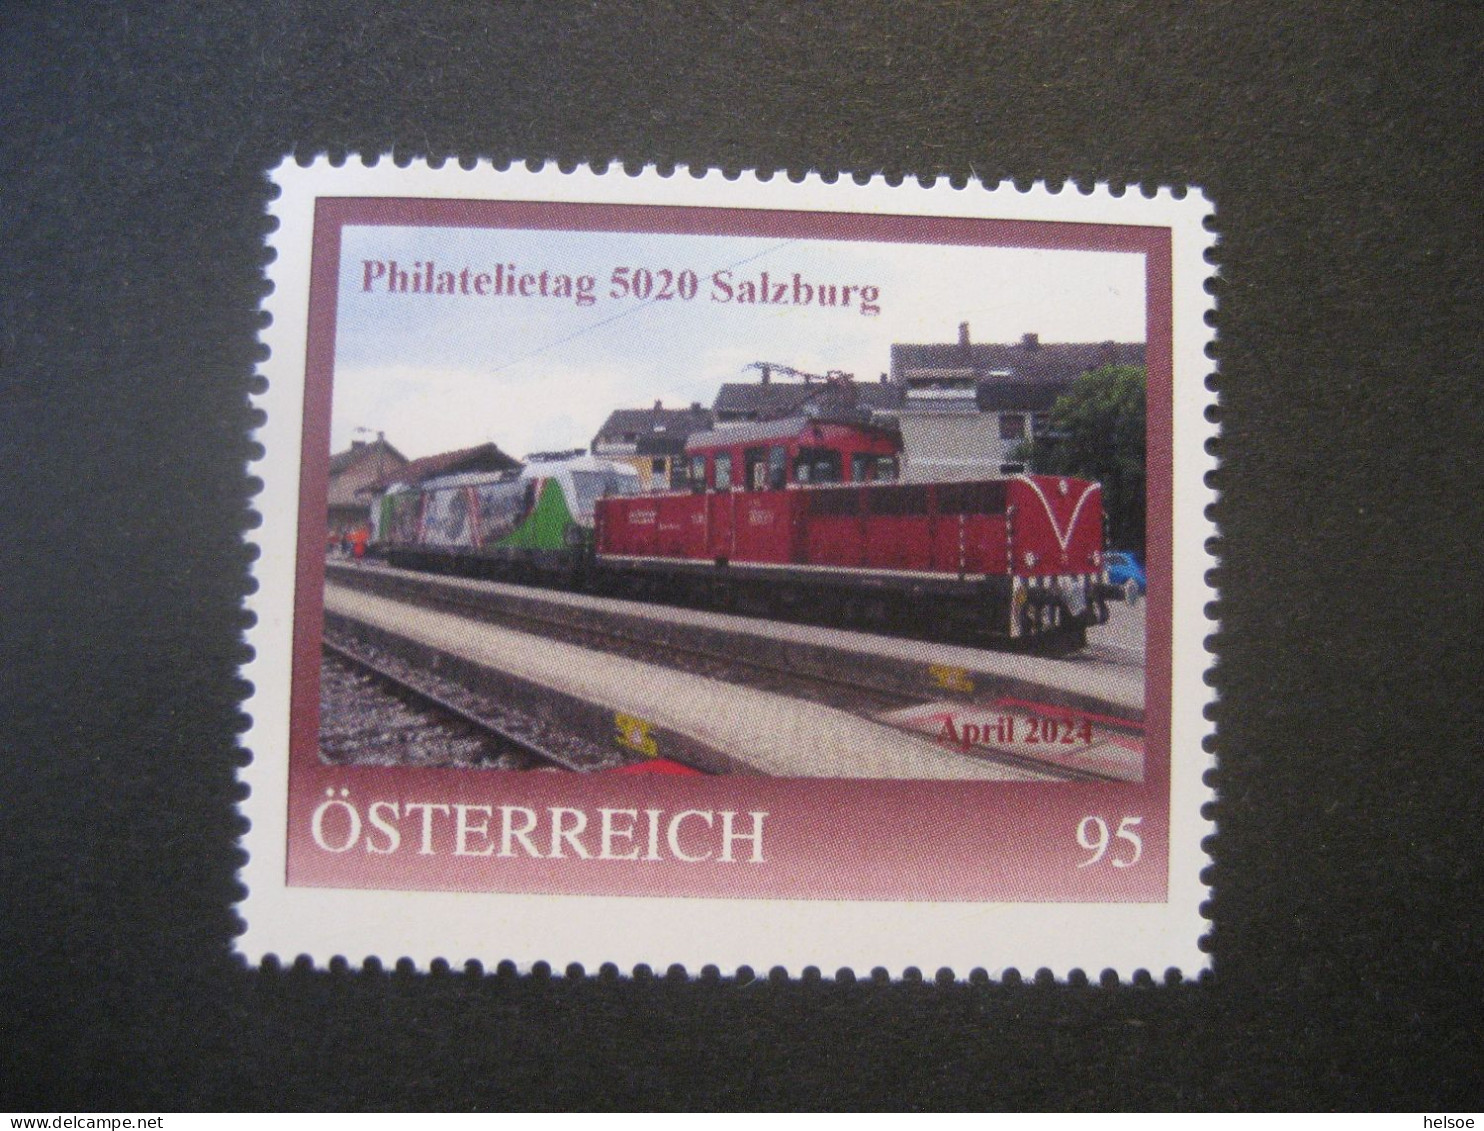 Österreich- 5020 Salzburg 8148553, Philatelietag Ungebraucht - Personnalized Stamps